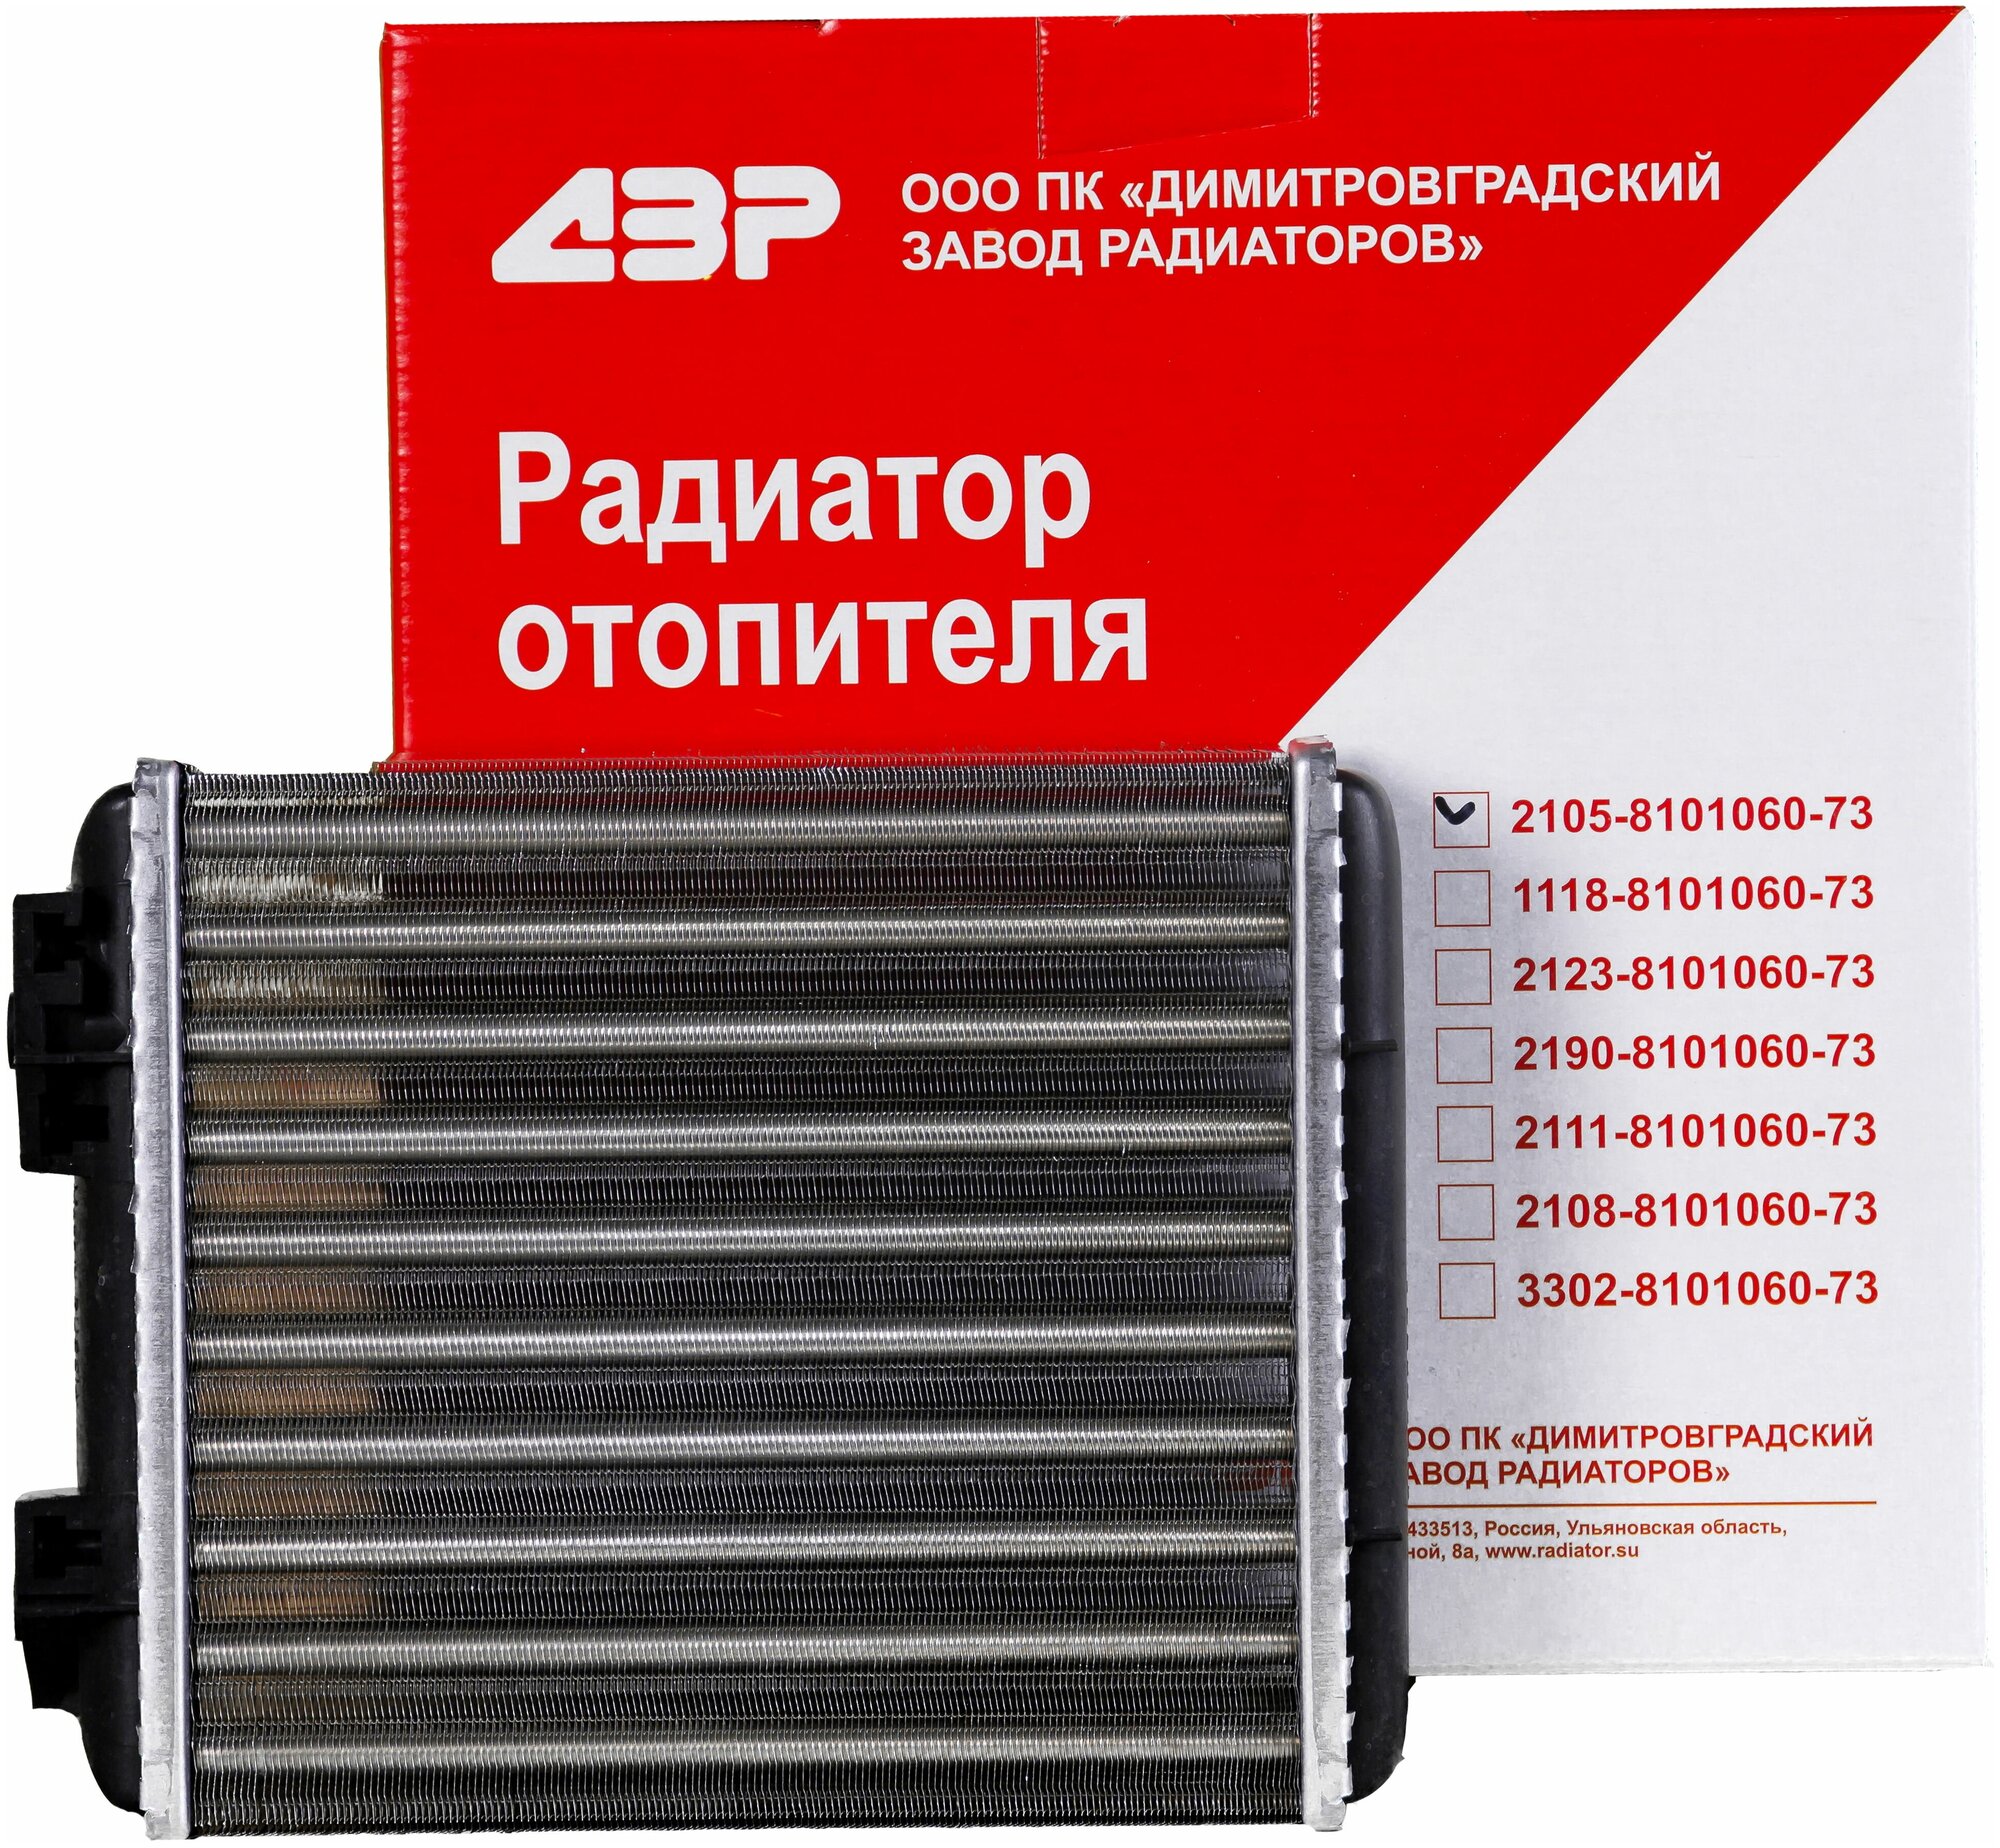 Радиатор отопителя ВАЗ 2105 алюминий ДЗР